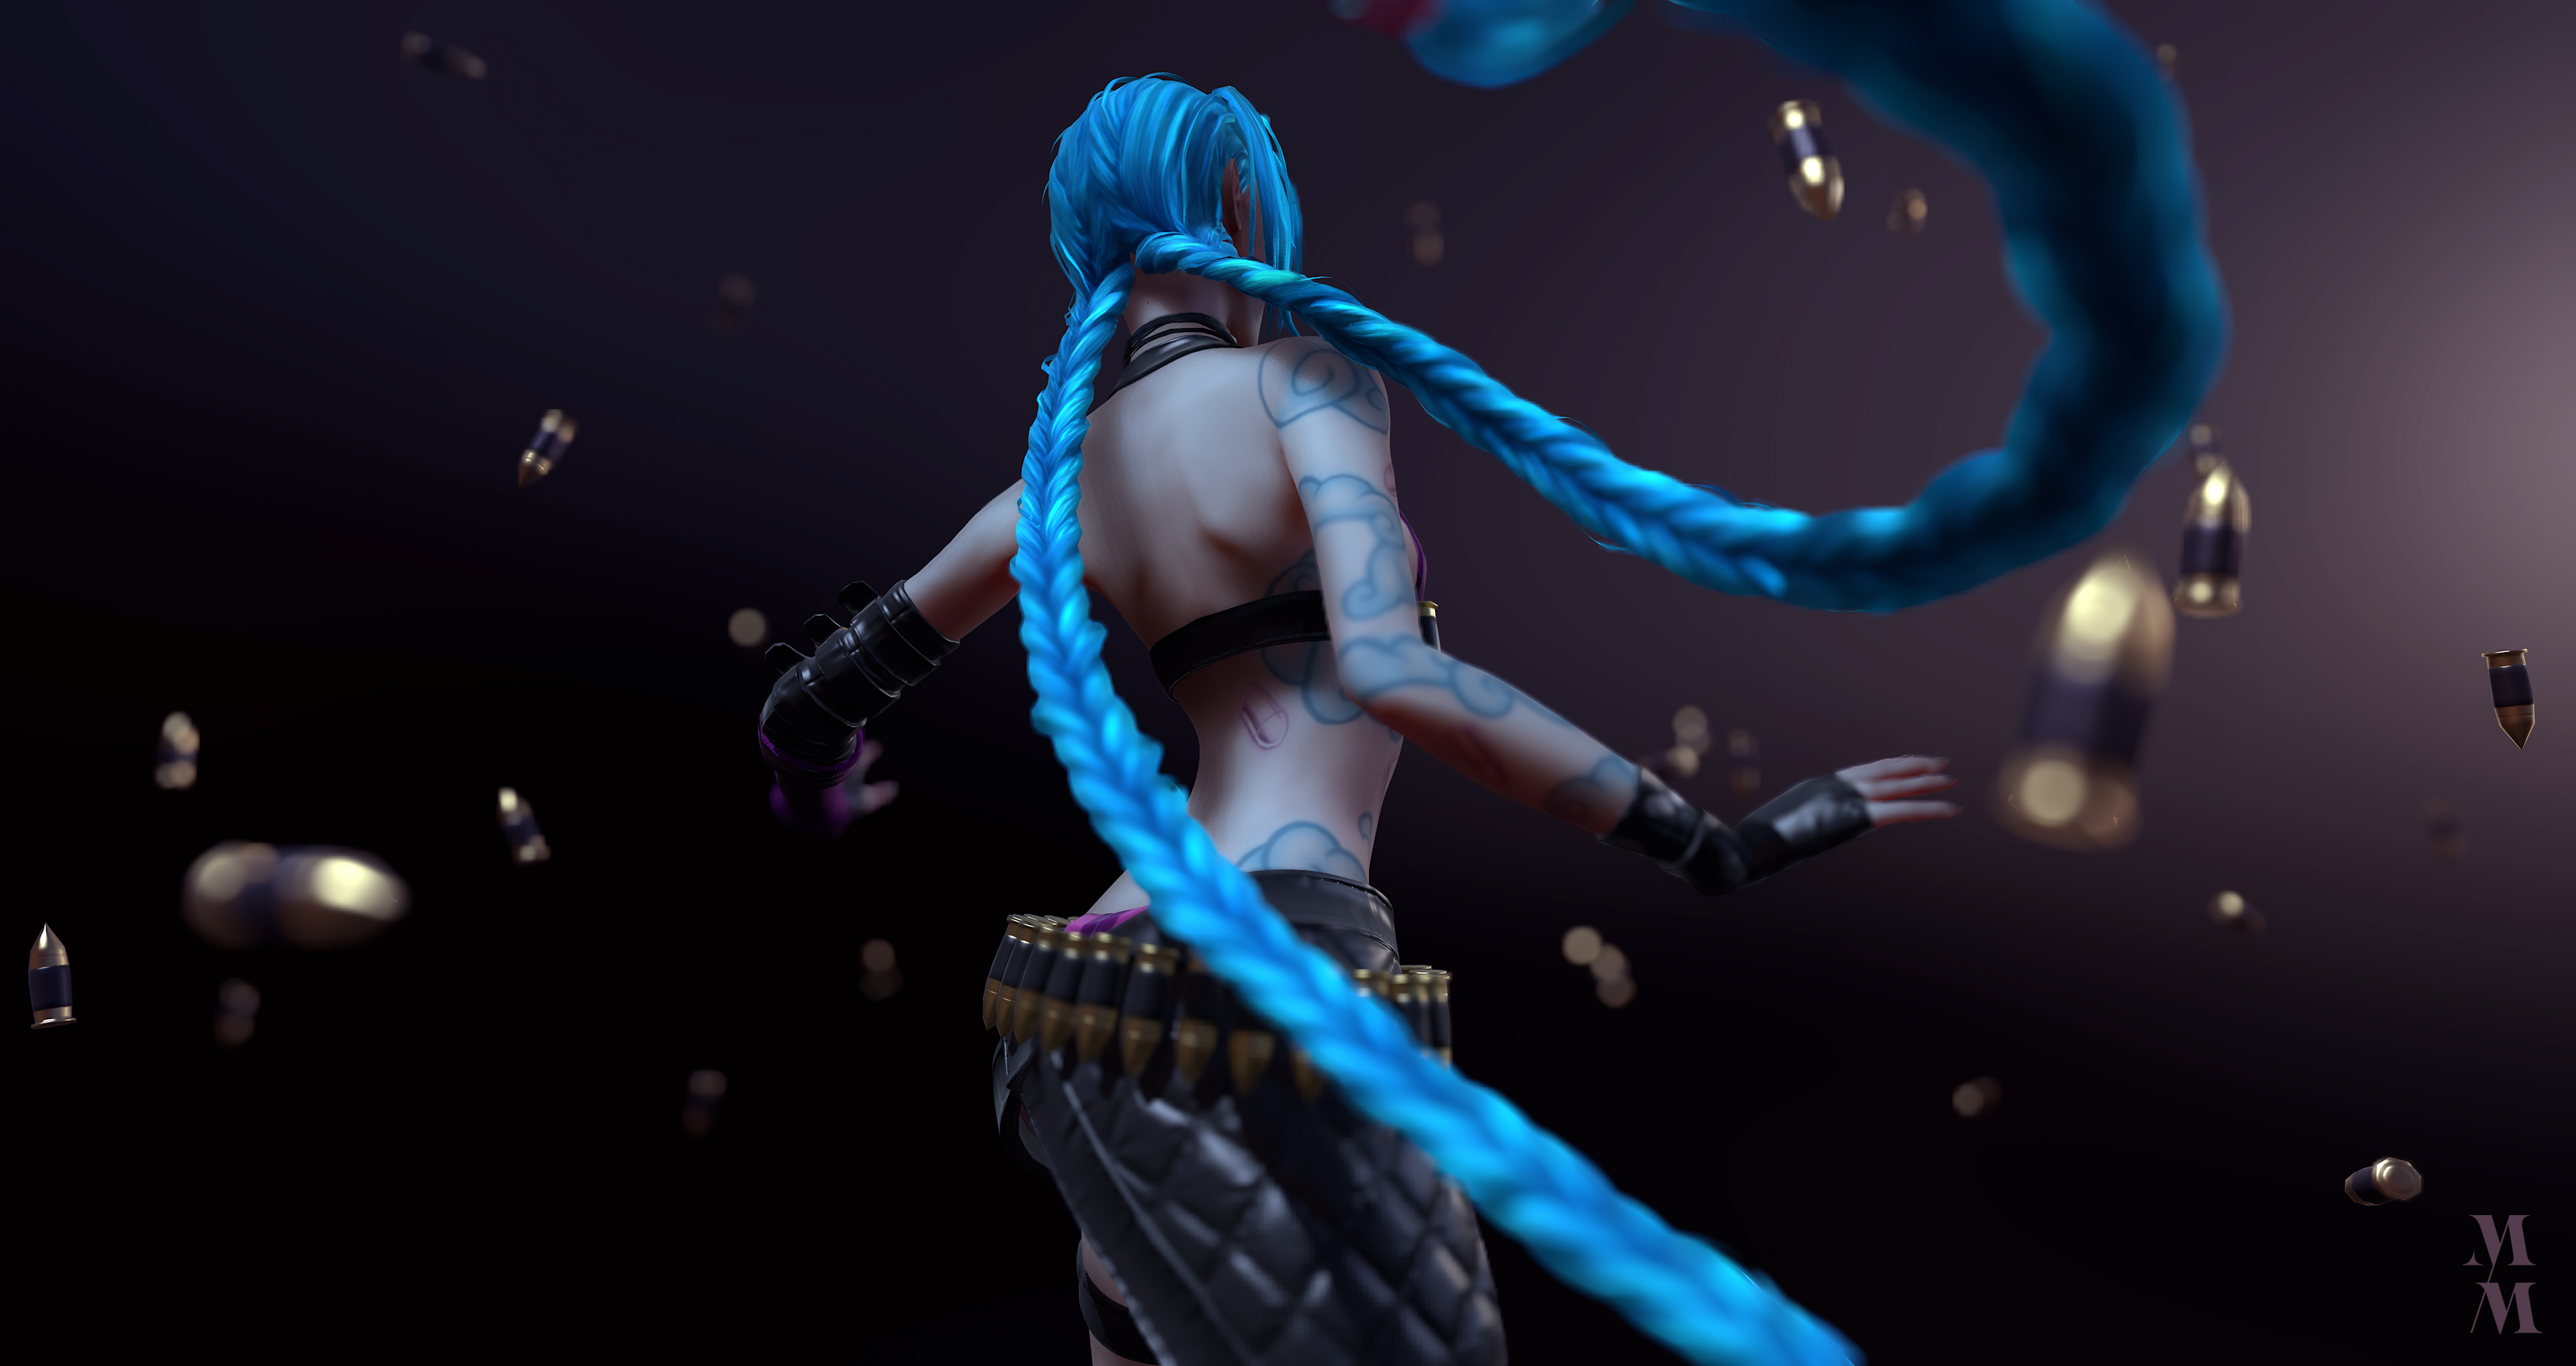 jinx (league of legends), league of legends, video game, blue hair, long hair, tattoo 1080p